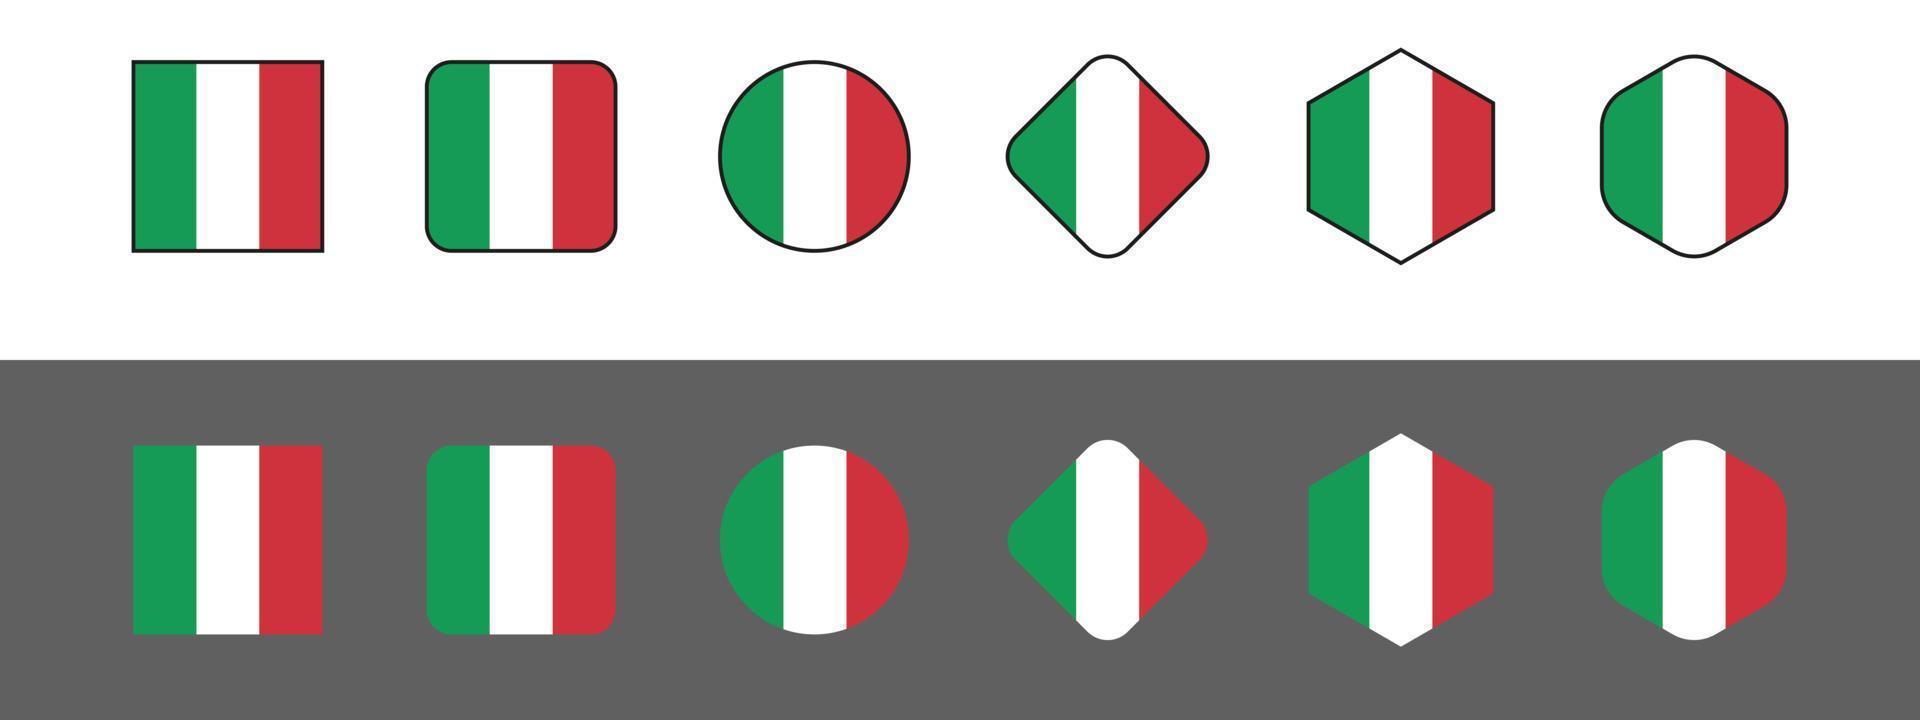 bandeira da itália, bandeira nacional da itália, bandeira da itália no modo de cor de proporção padrão rgb. ilustração vetorial vetor